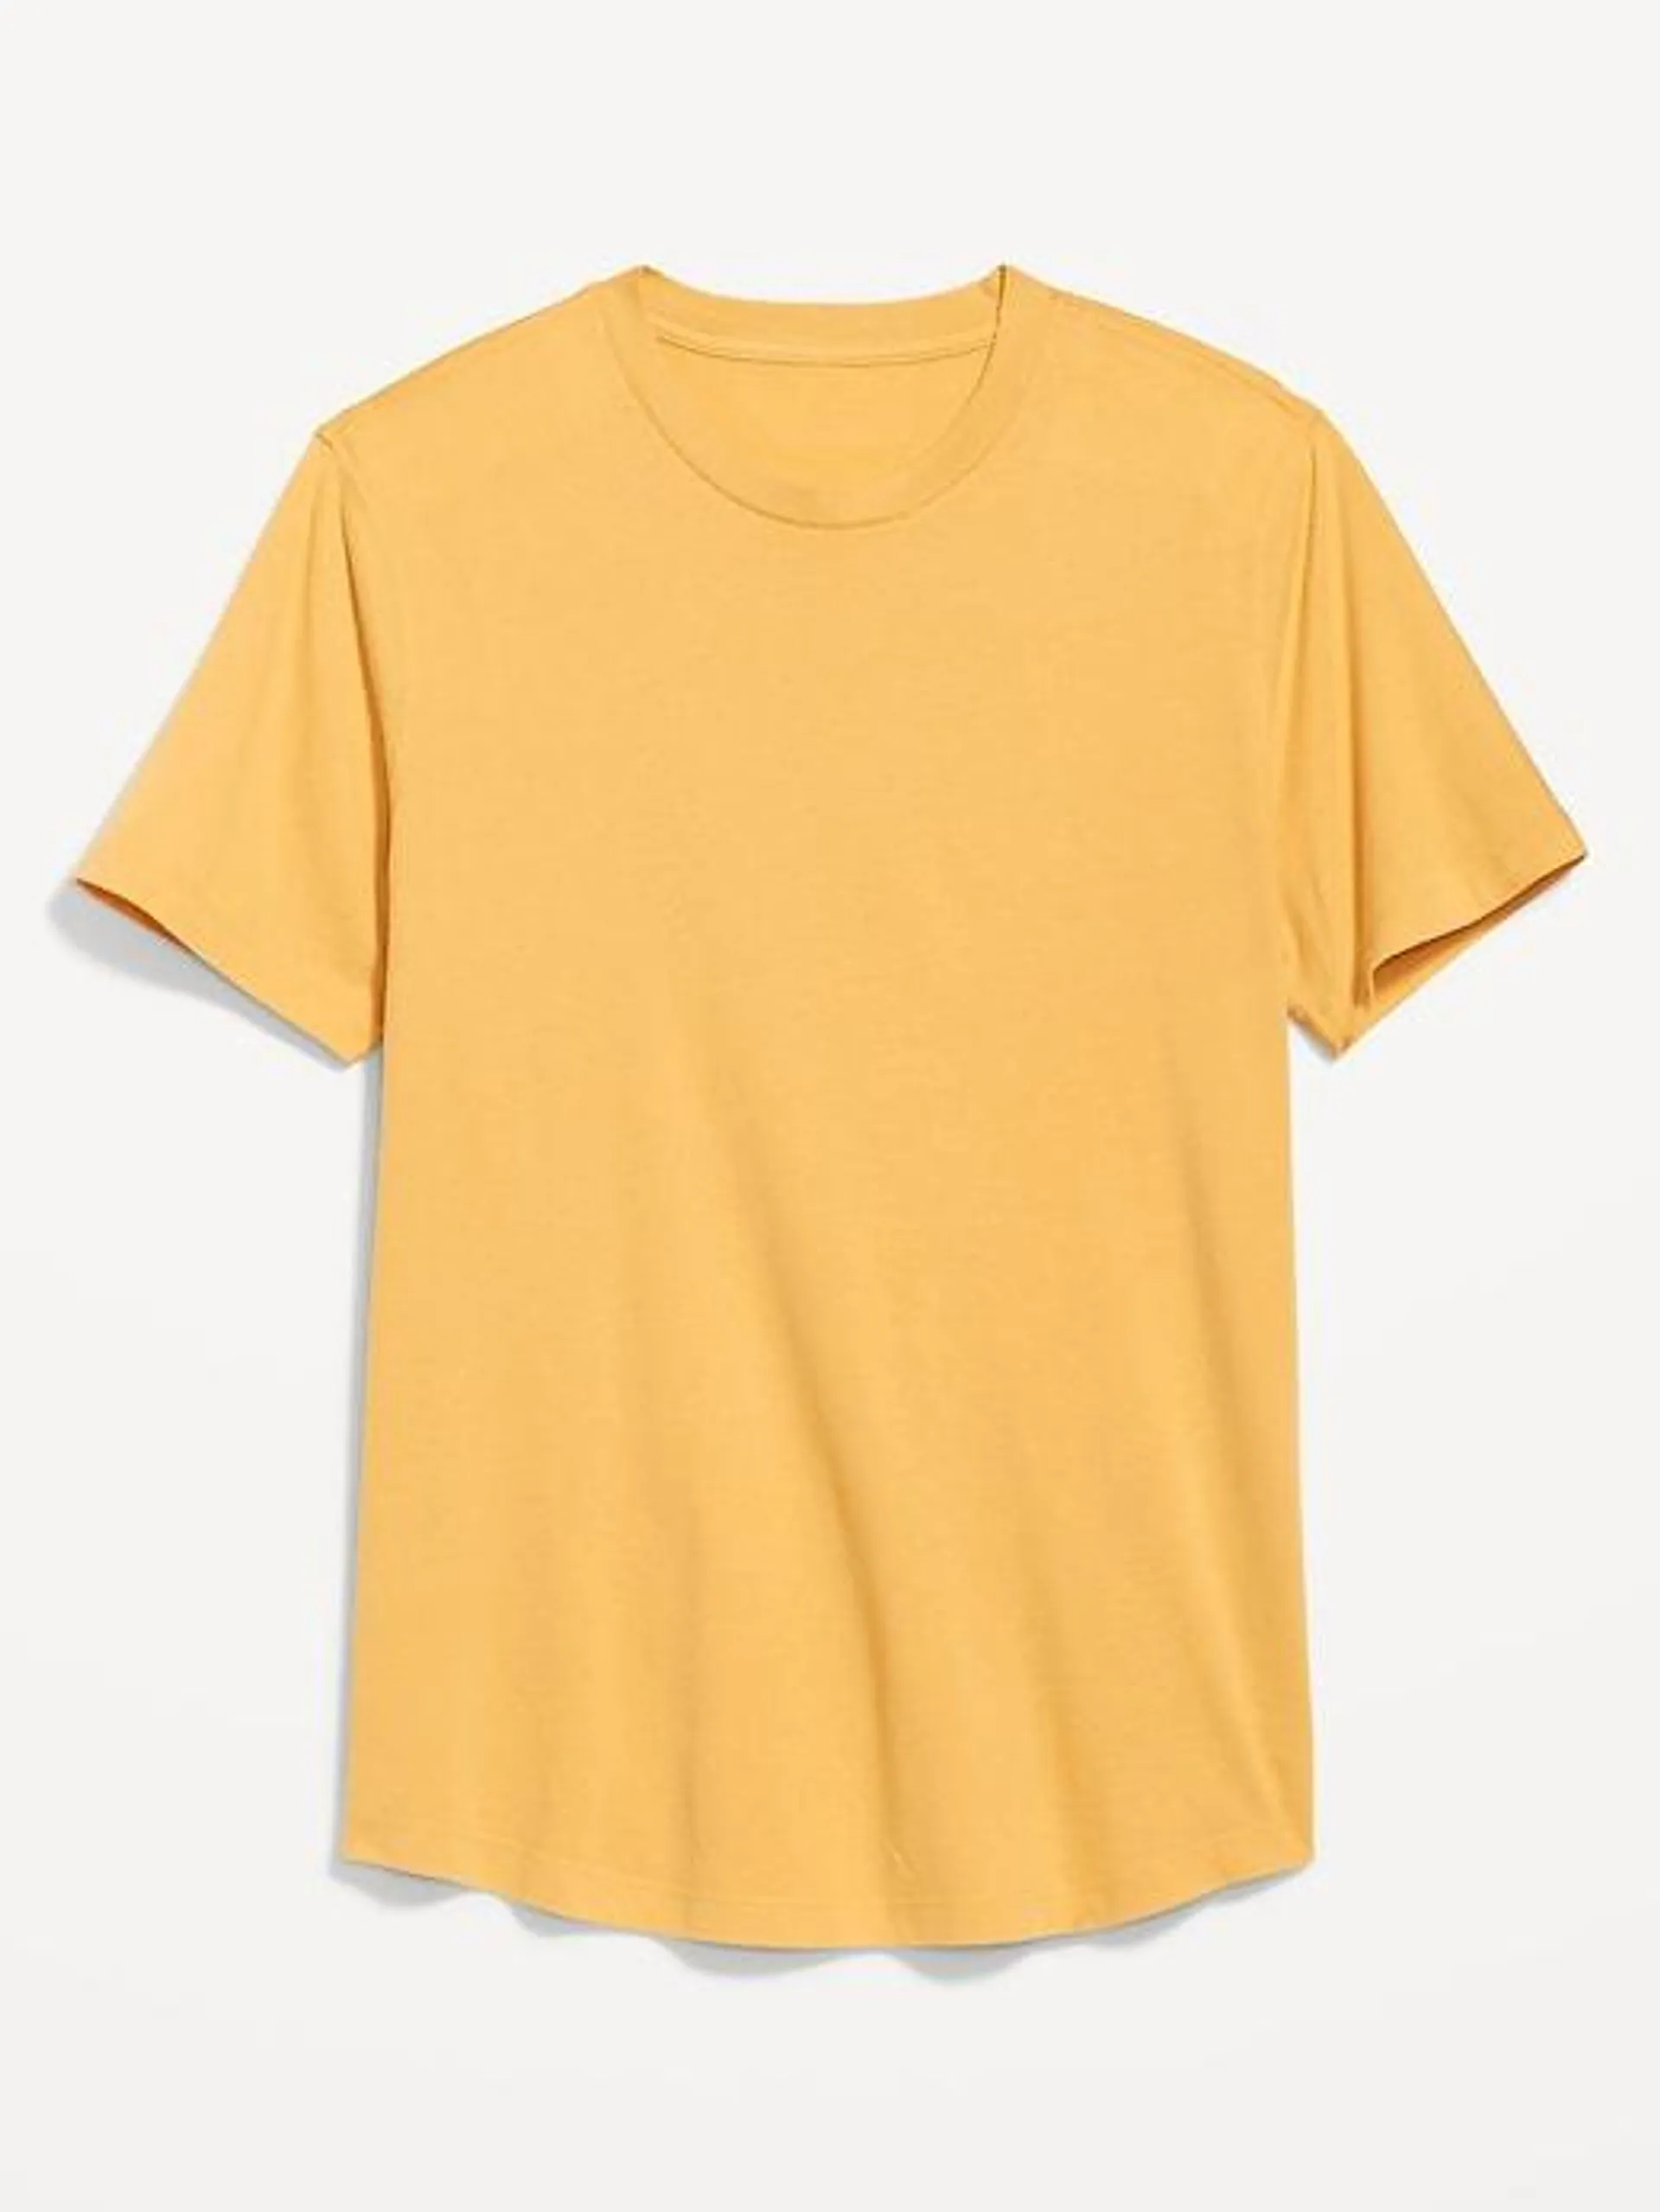 Soft-Washed Curved-Hem T-Shirt for Men